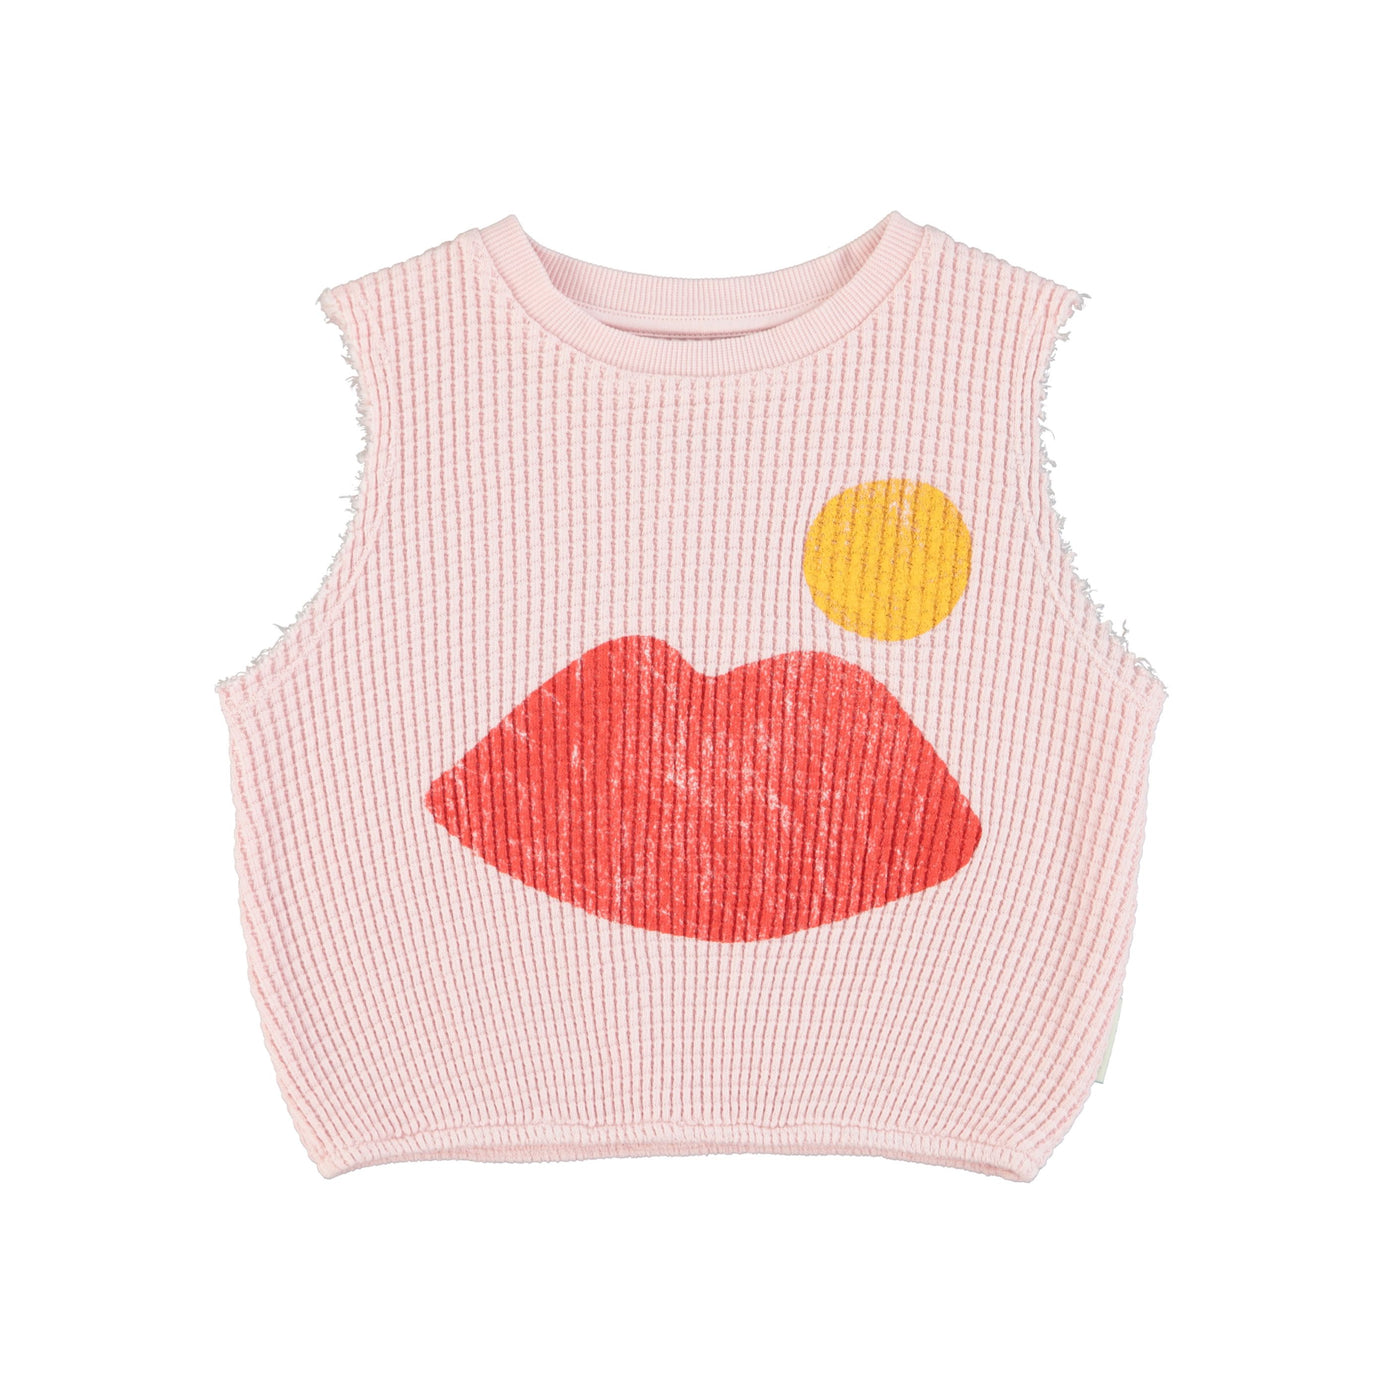 Piupiuchick sleeveless top light pink w/ lips print